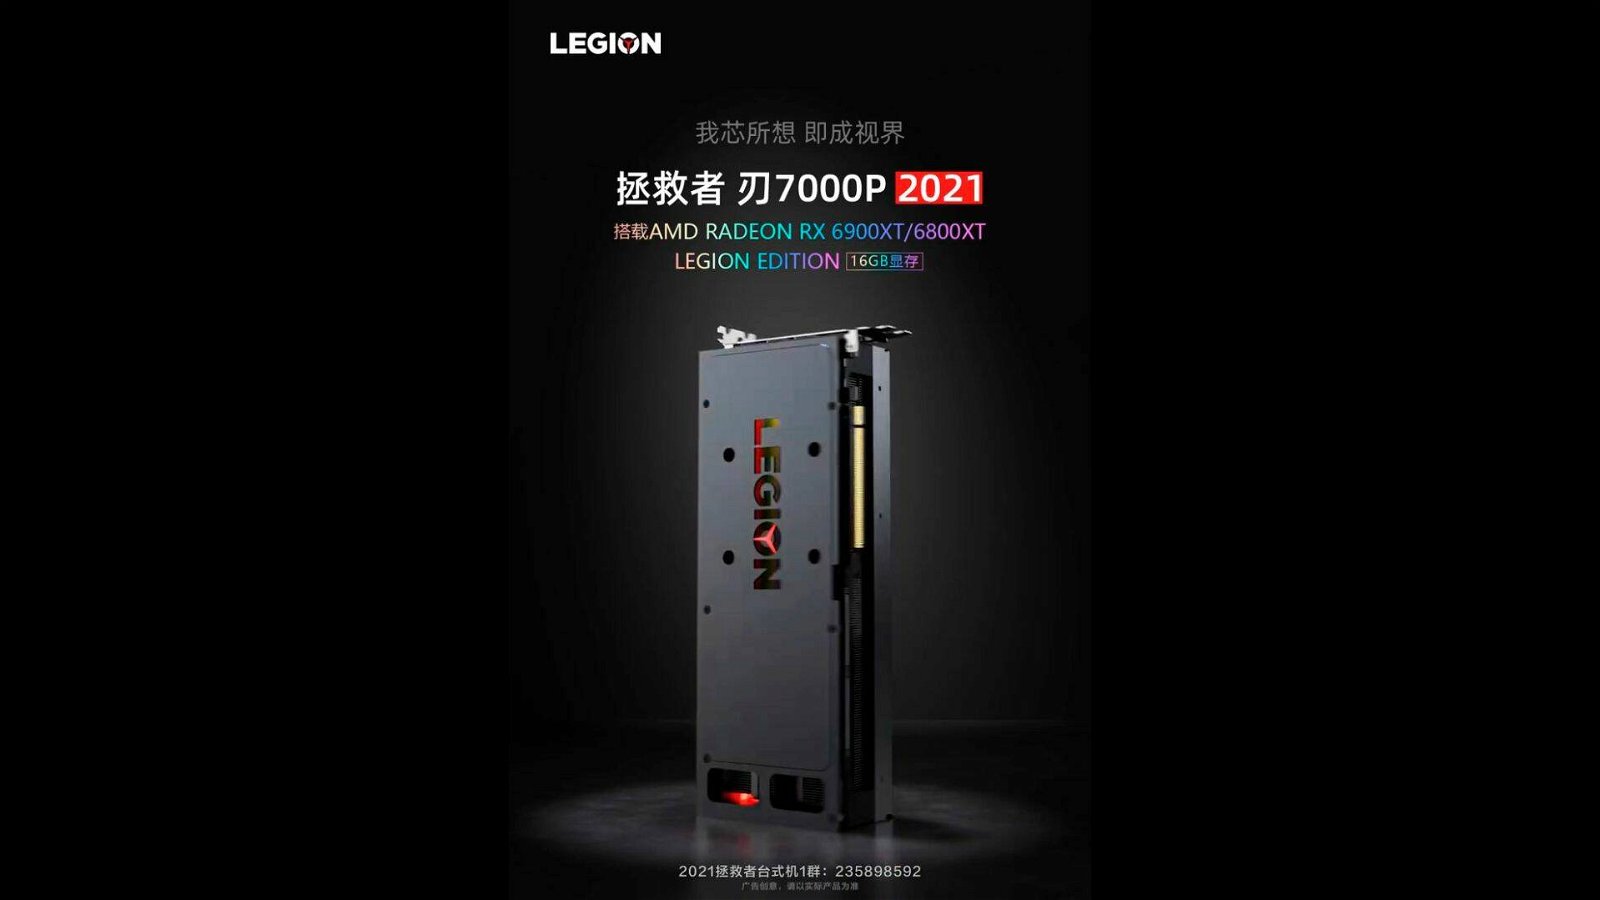 Immagine di Lenovo, ecco le nuove Radeon RX 6900 XT e 6800 XT Legion Edition